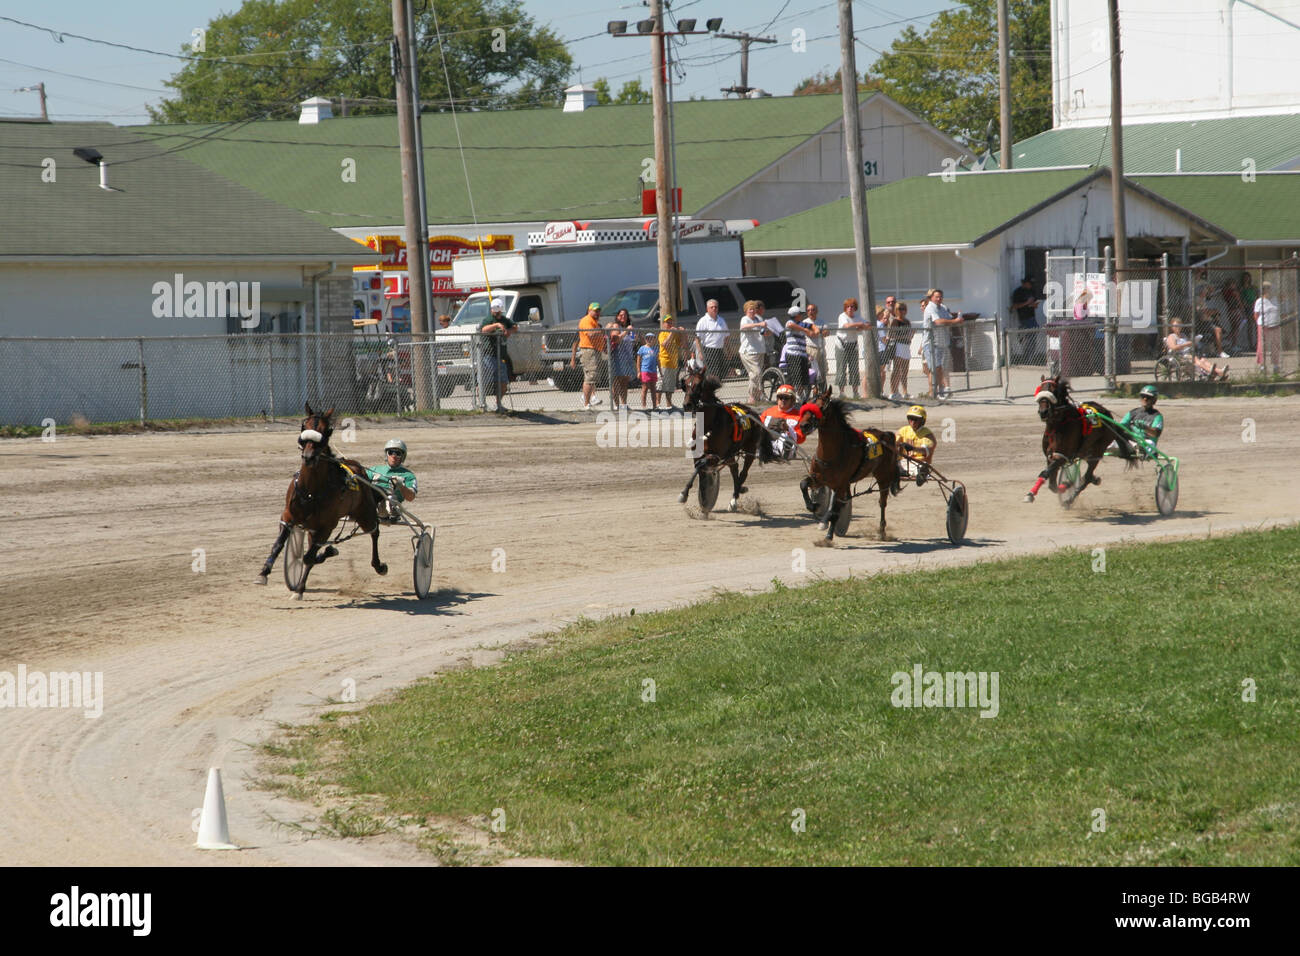 Cablaggio Racing. Corse di cavalli. Canfield Fair, Canfield, Ohio, Stati Uniti d'America. Foto Stock